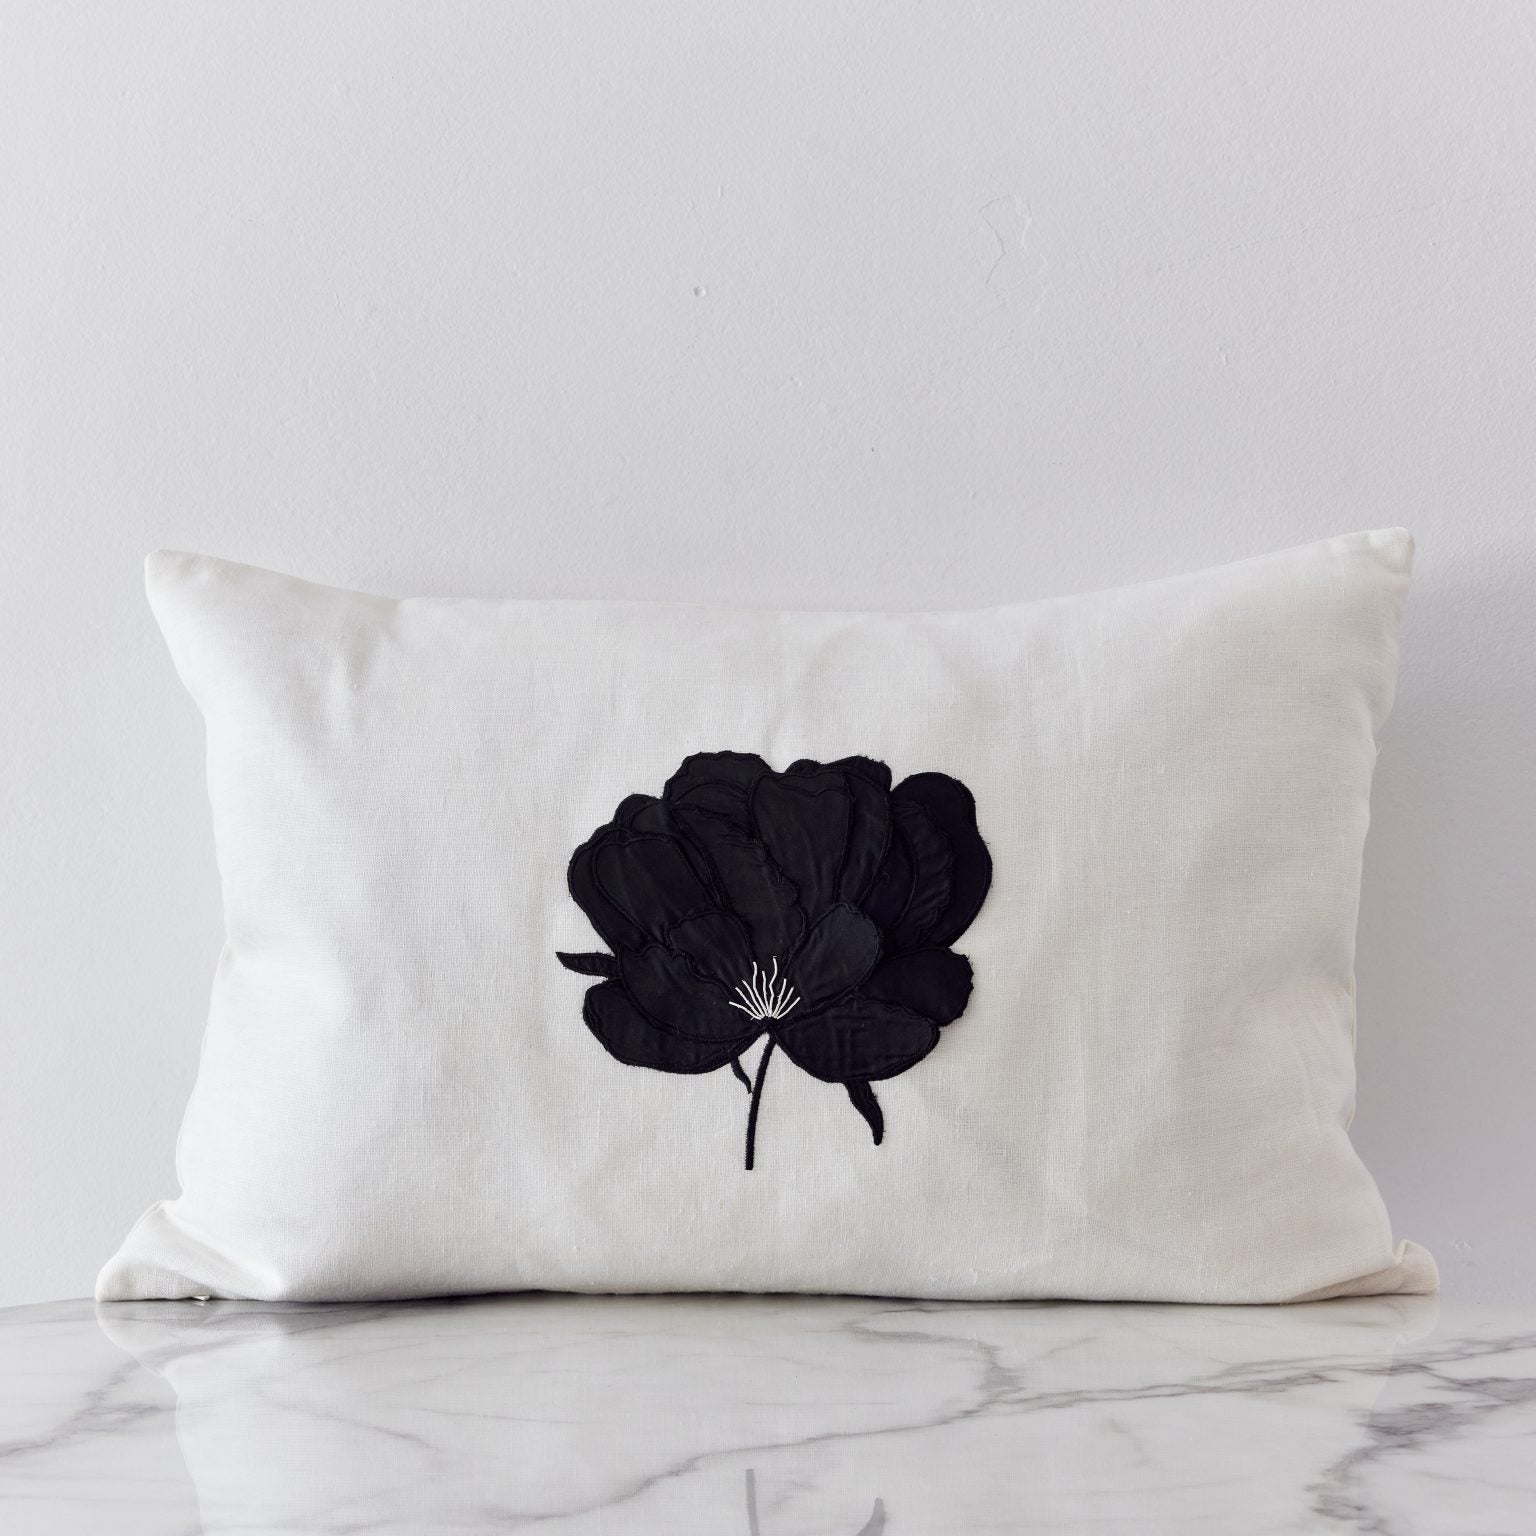 Ifuru Black Silk Flower on White Linen